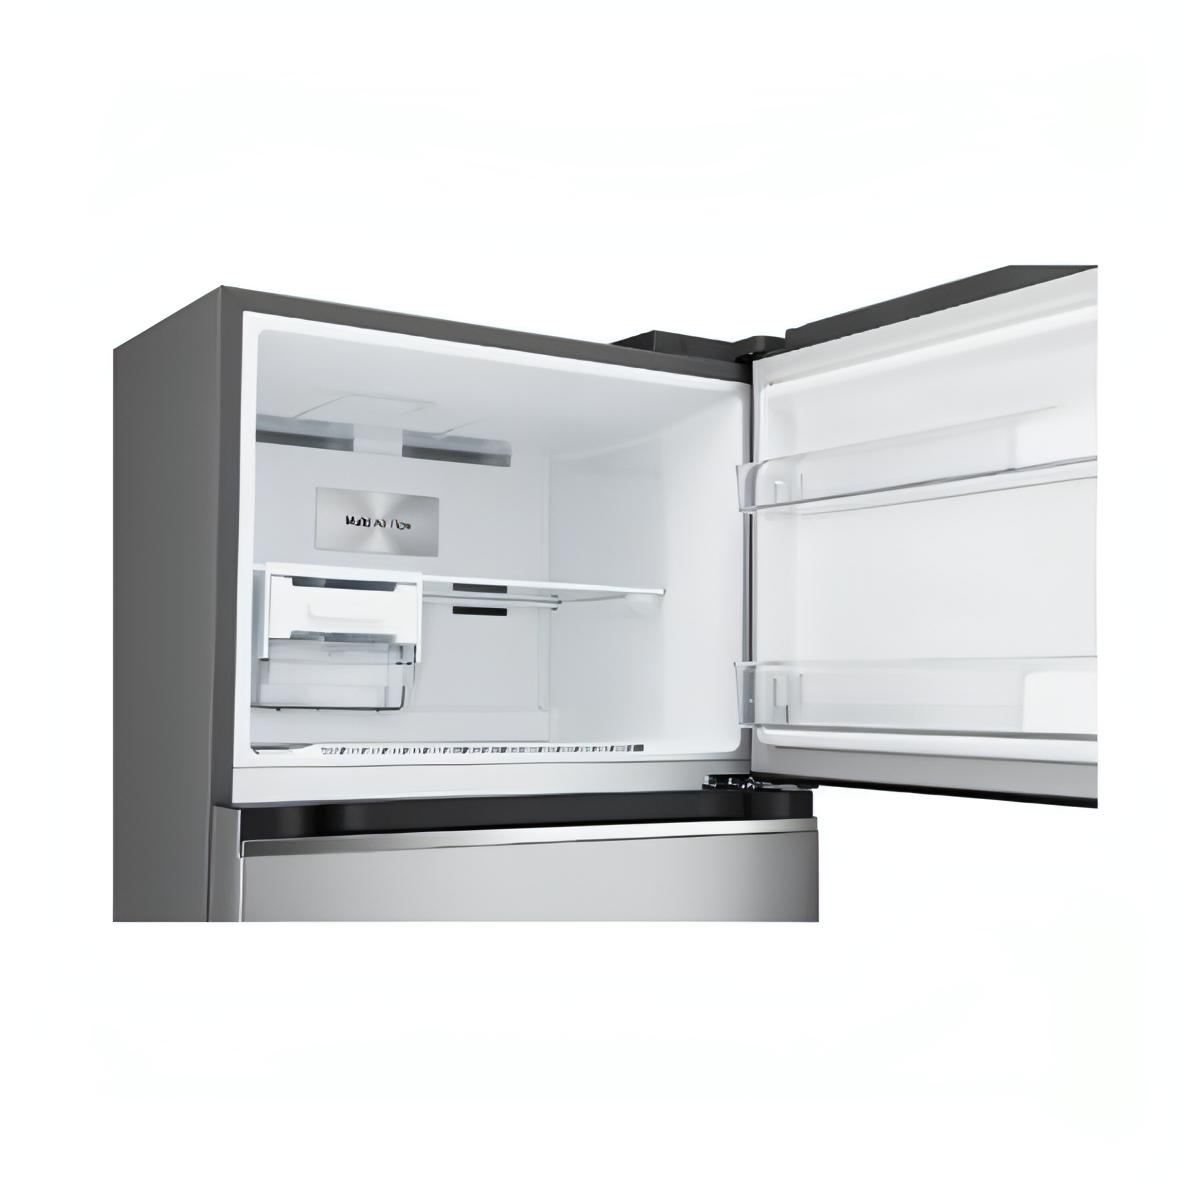 Refrigerador LG 14 Pies Top Mount Silver